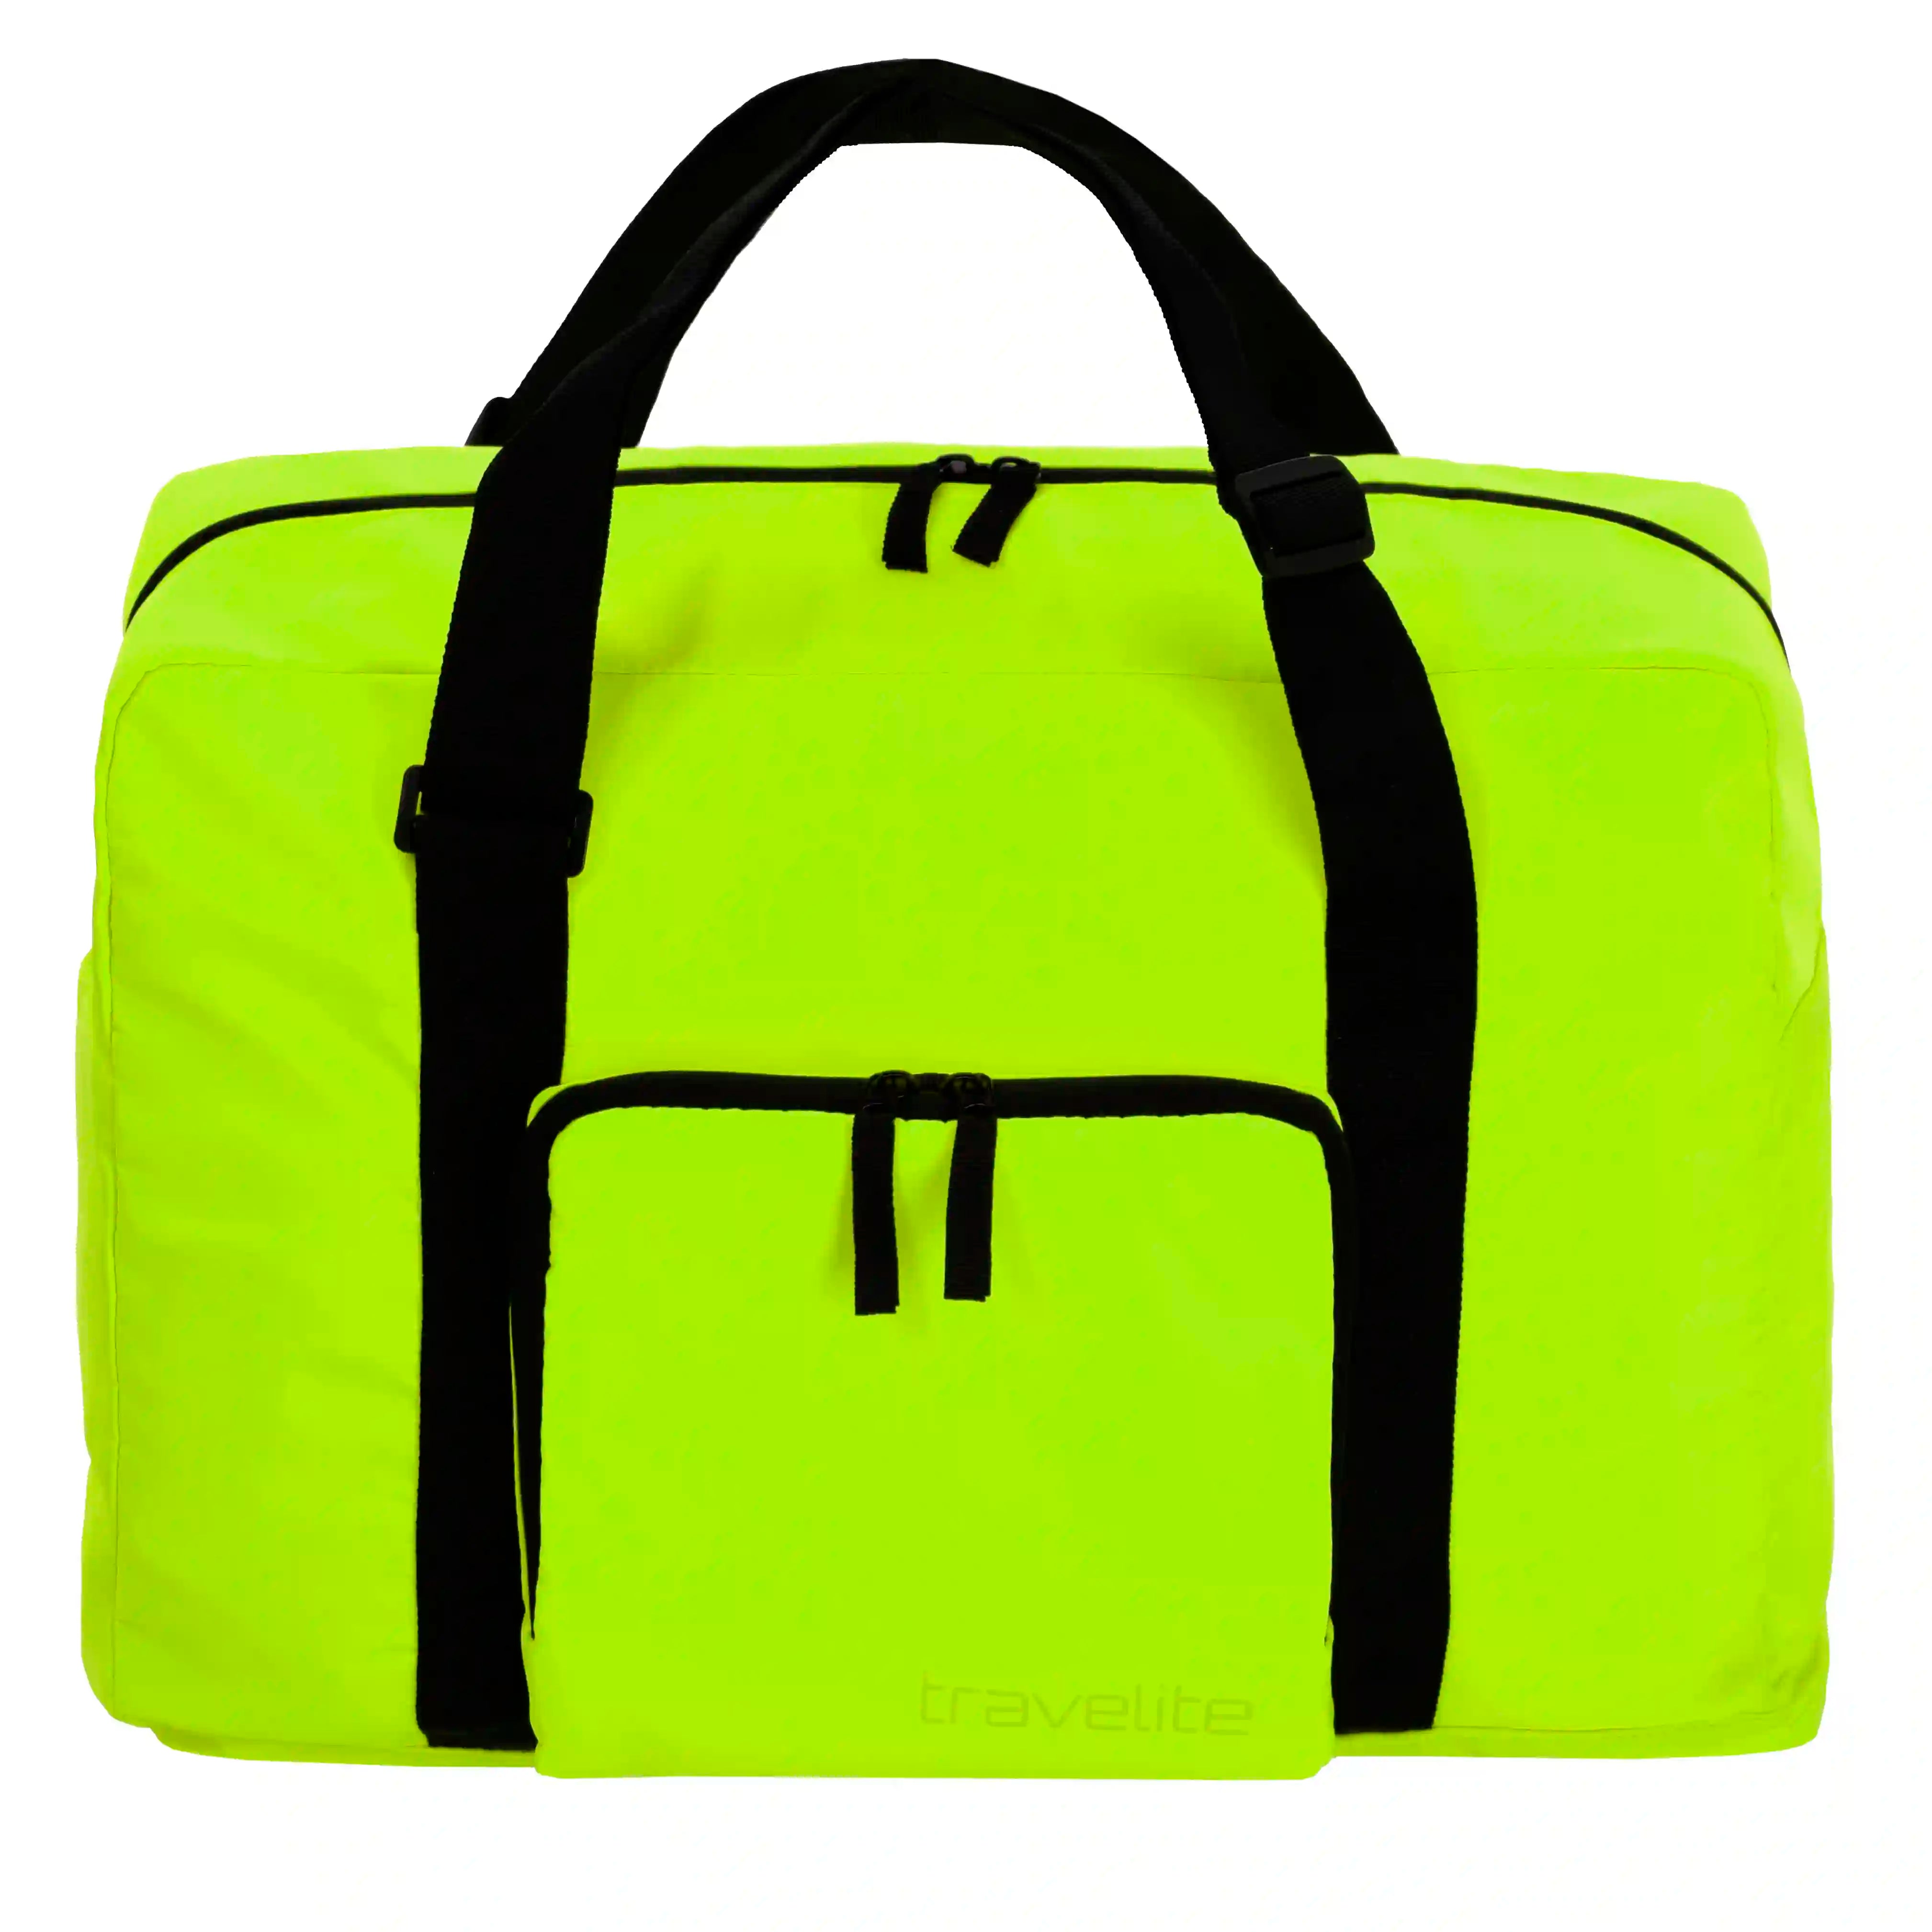 Travelite Accessories sac de voyage pliable 44 cm - citron vert